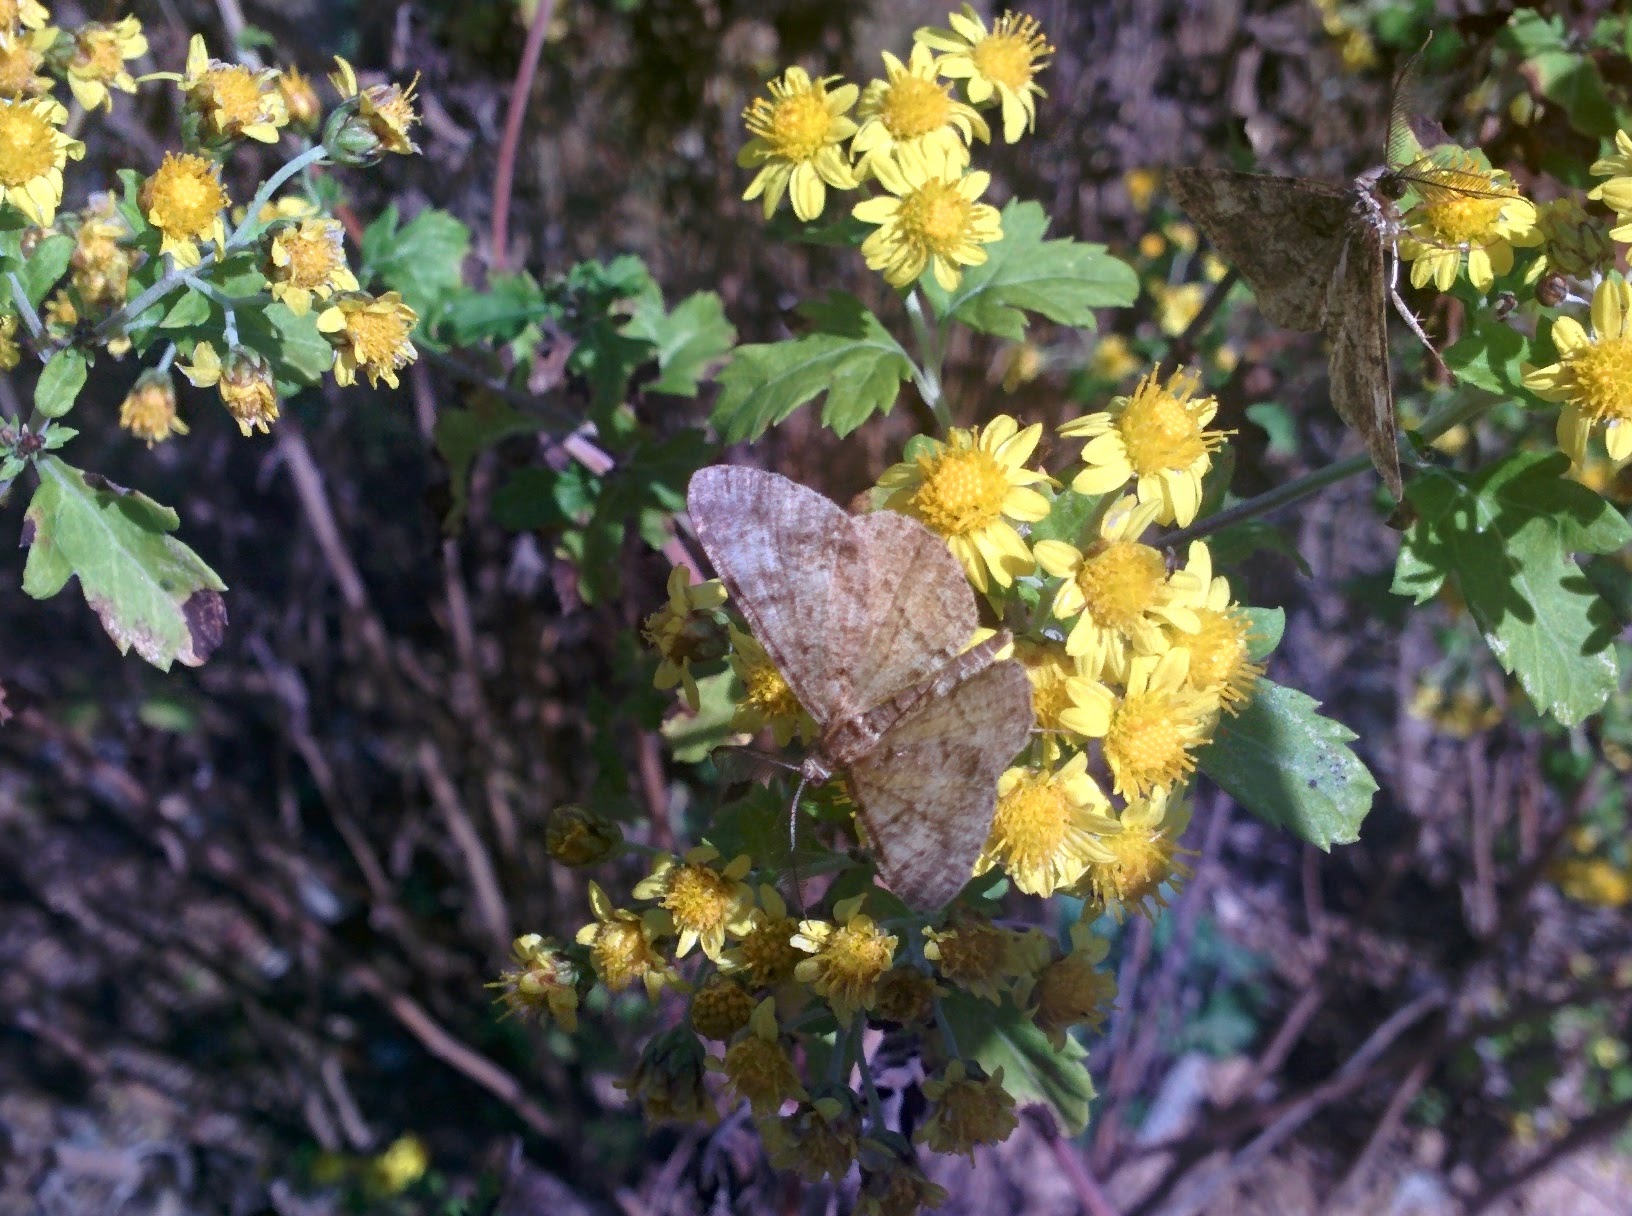 IMG_20151014_130703.jpg 노란색 작은 꽃의 들국화(산국) 찾은 나방 두마리